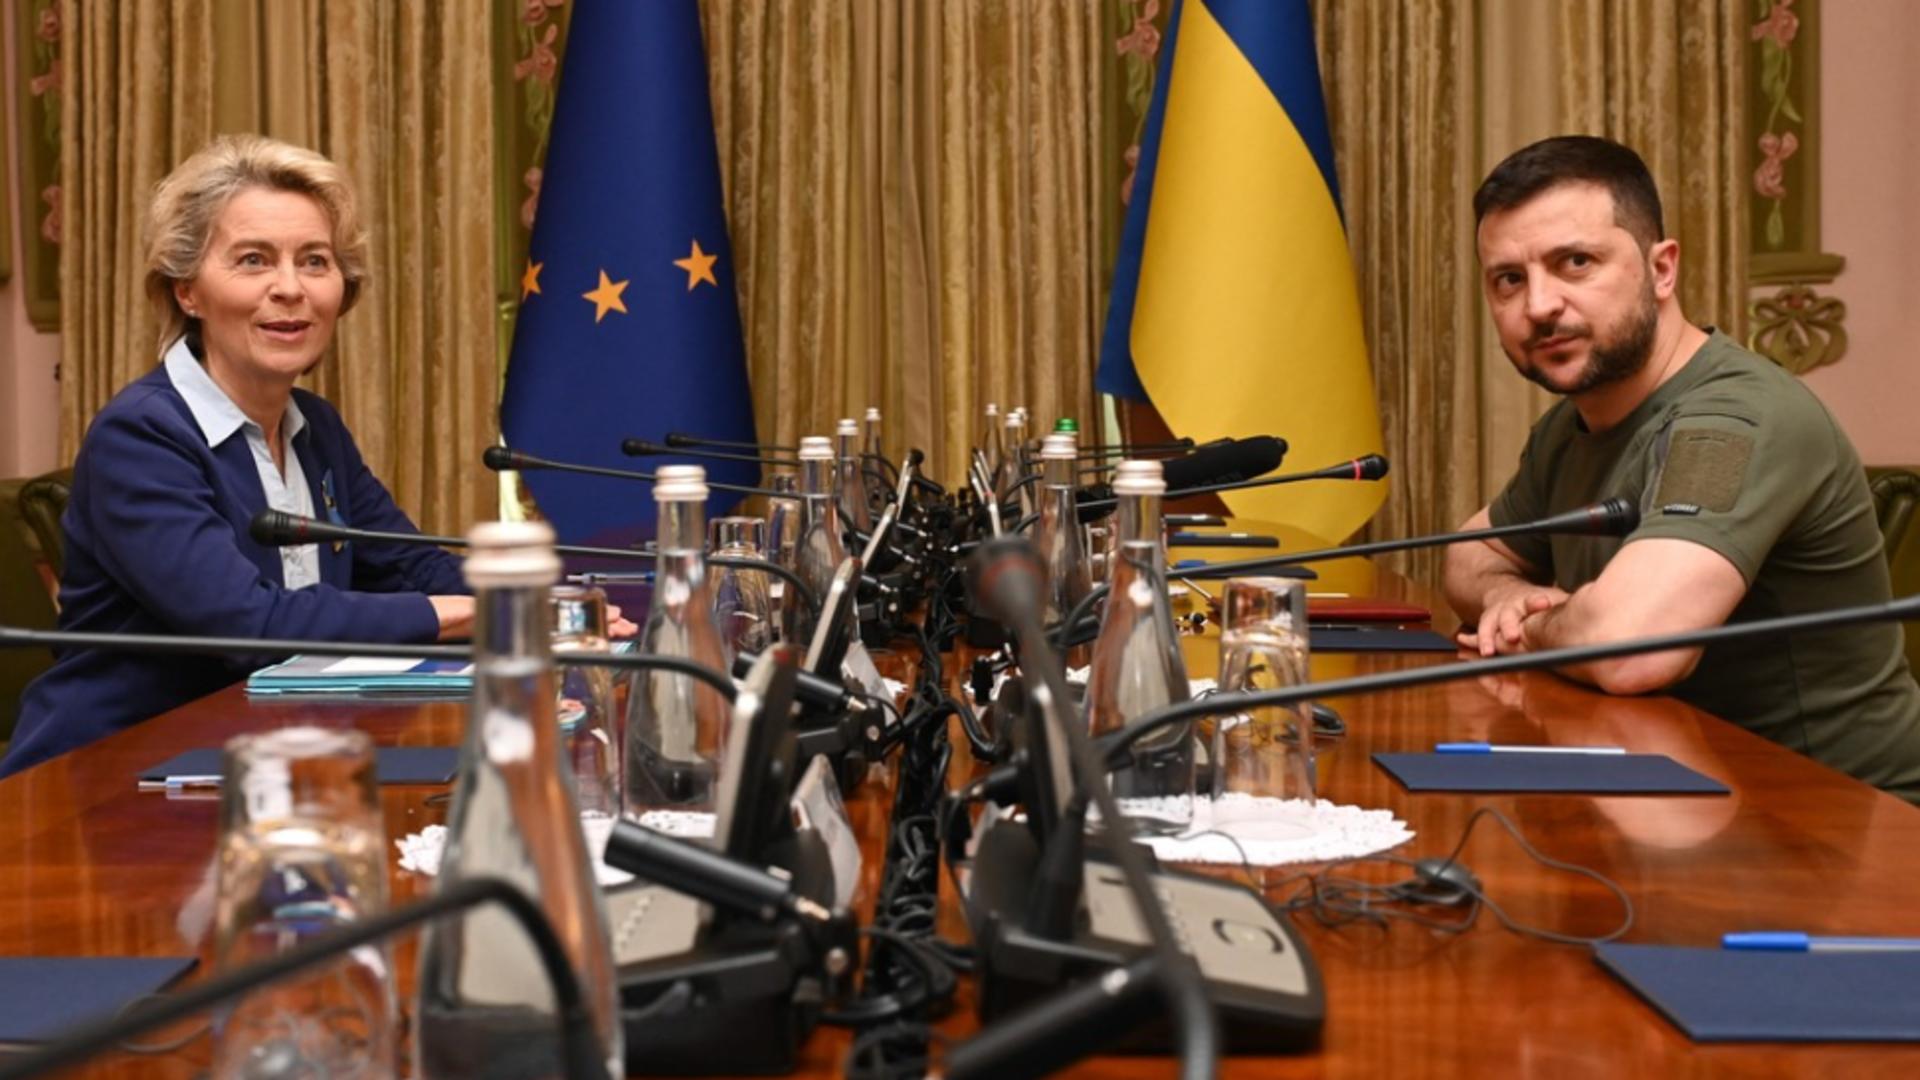 Ajutor pentru Ucraina din UE - Ursula von der Leyen și președintele Zelenski / Foto: Profi Media